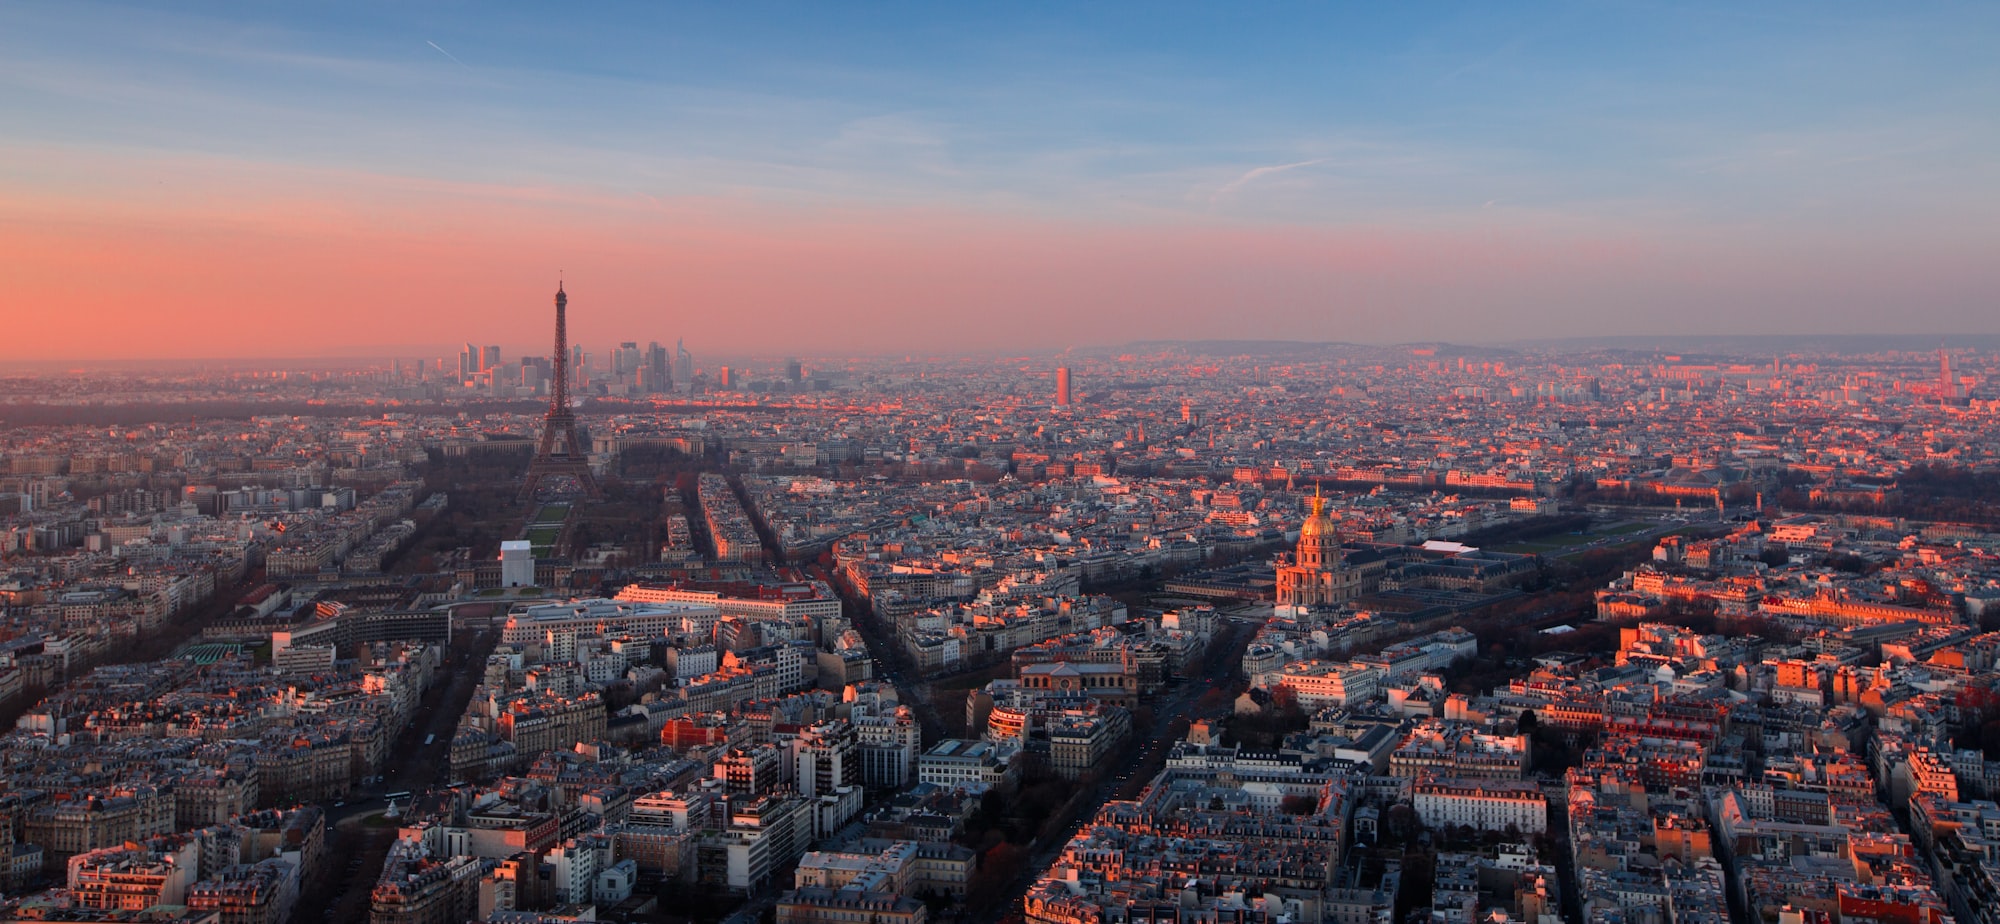 Paris at the sunset